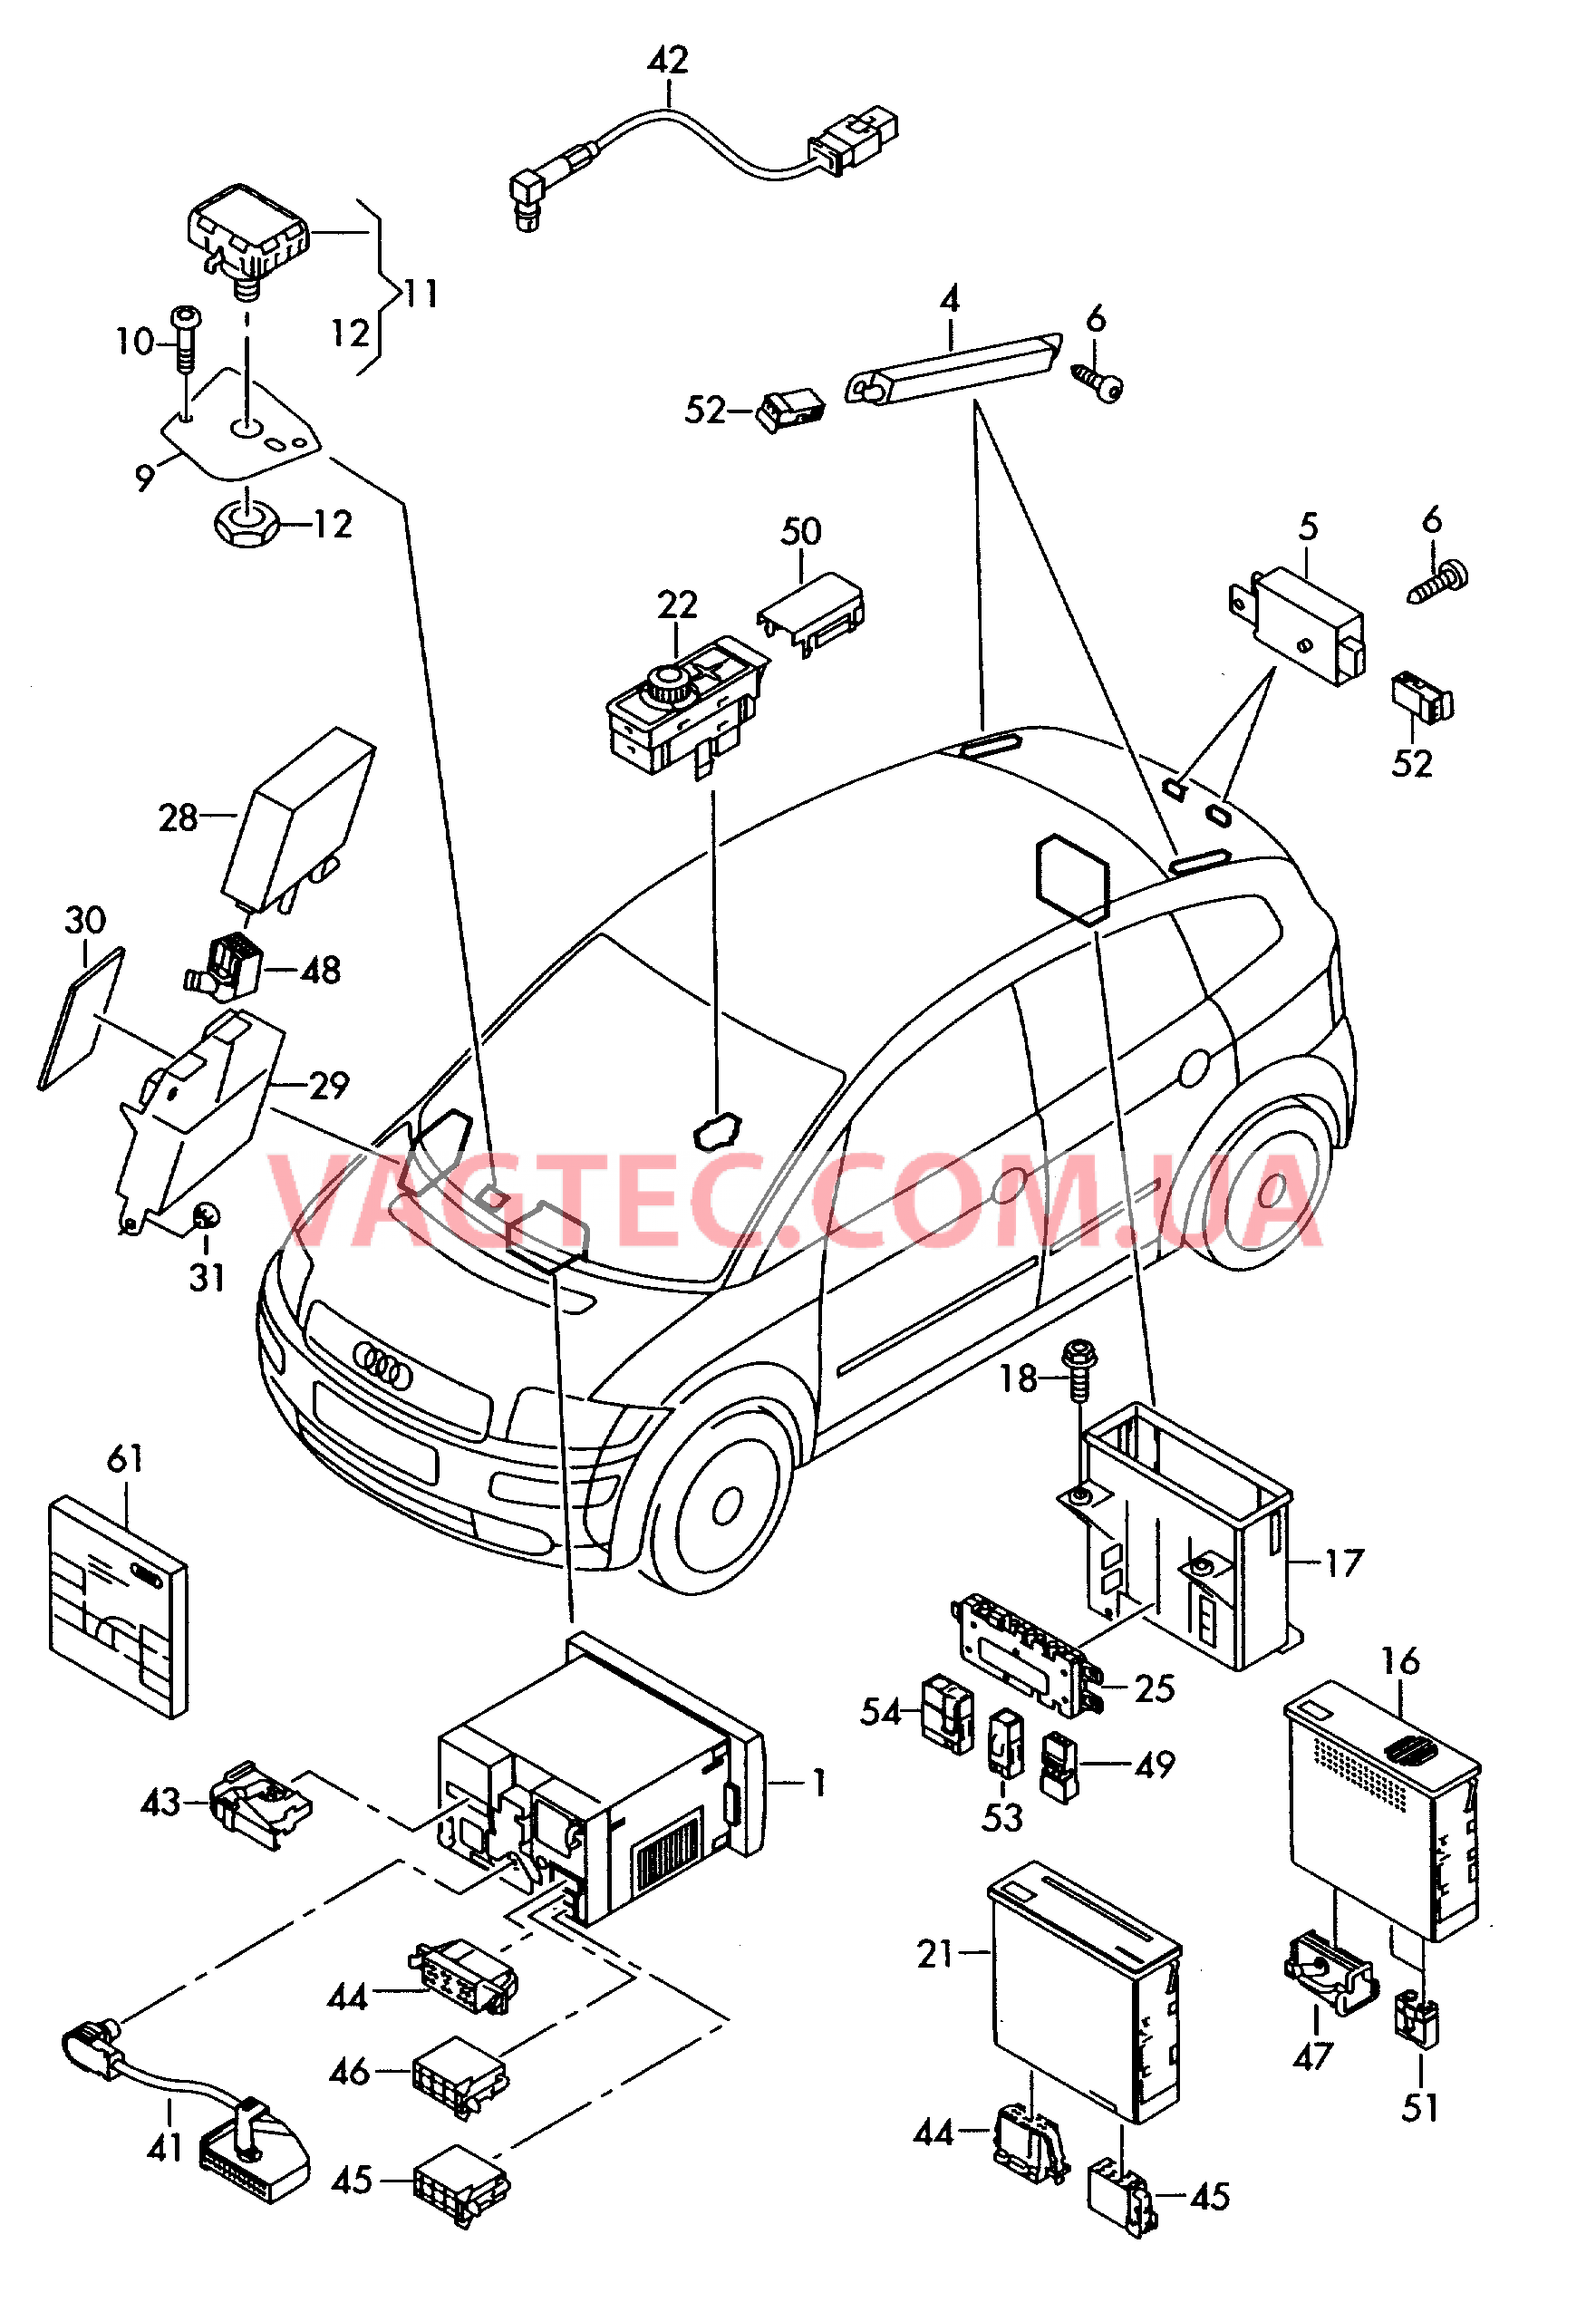 Электродетали для системы навигации с дисплеем в комбинации приборов  для AUDI A2 2002